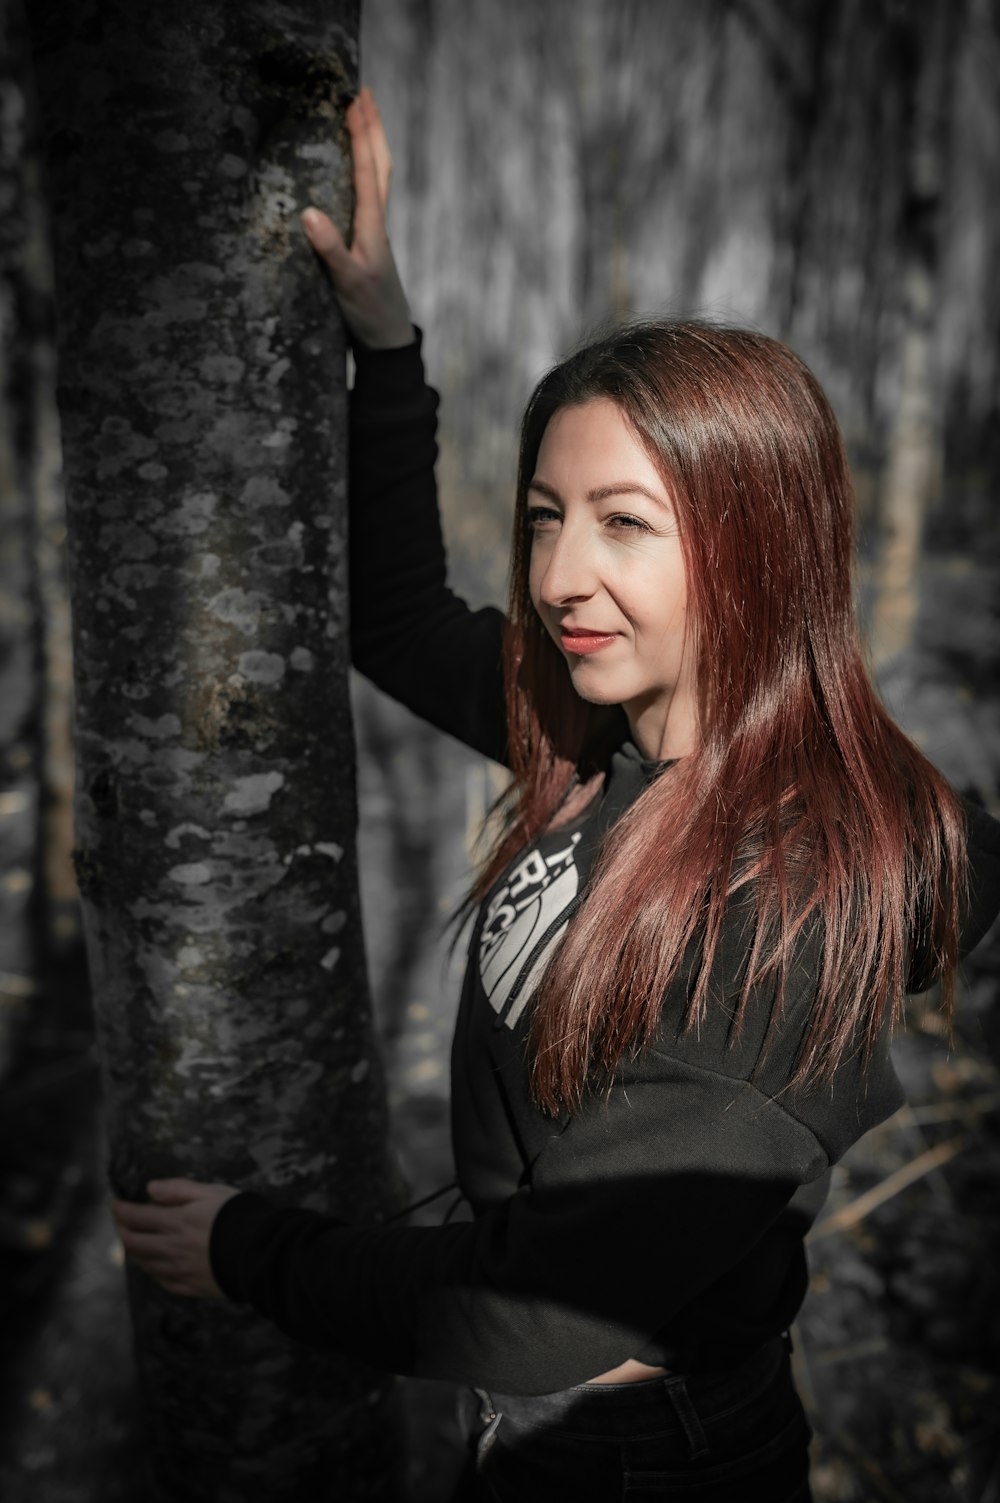 Une femme debout à côté d’un arbre dans une forêt